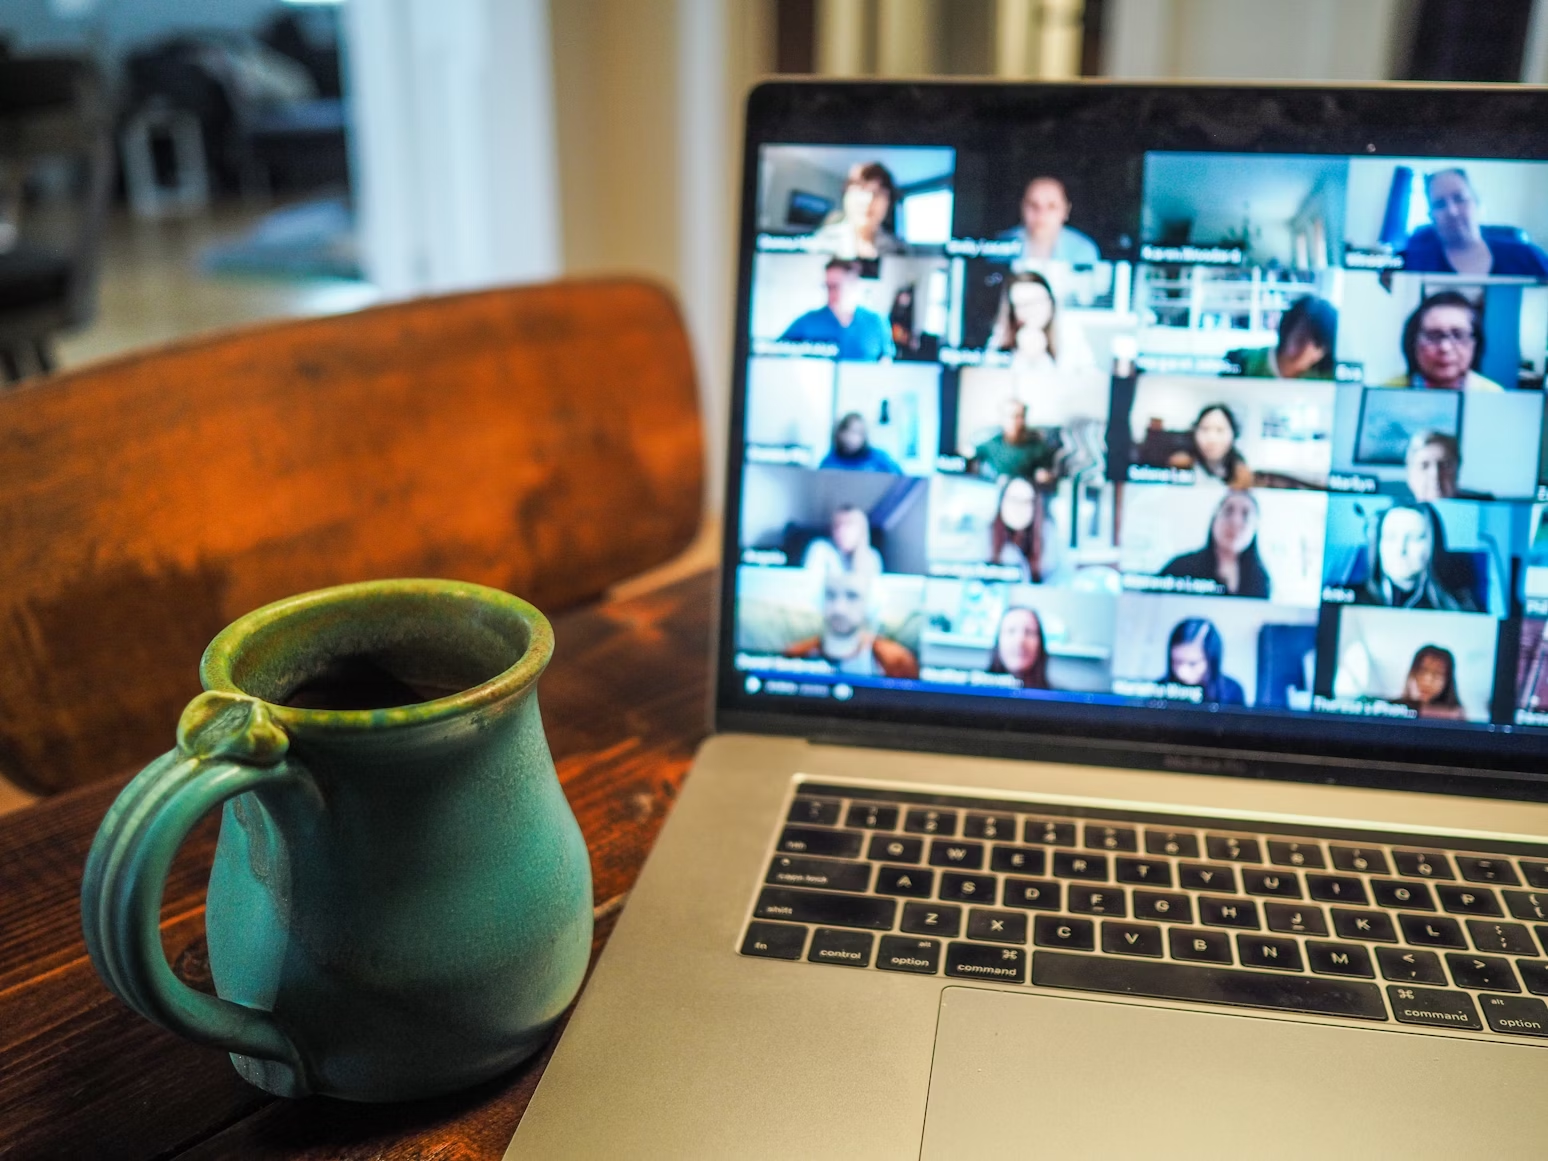 Macbook Pro posé sur une table à côté d'un mug bleu montrant des gens connectés sur Zoom via une webcam